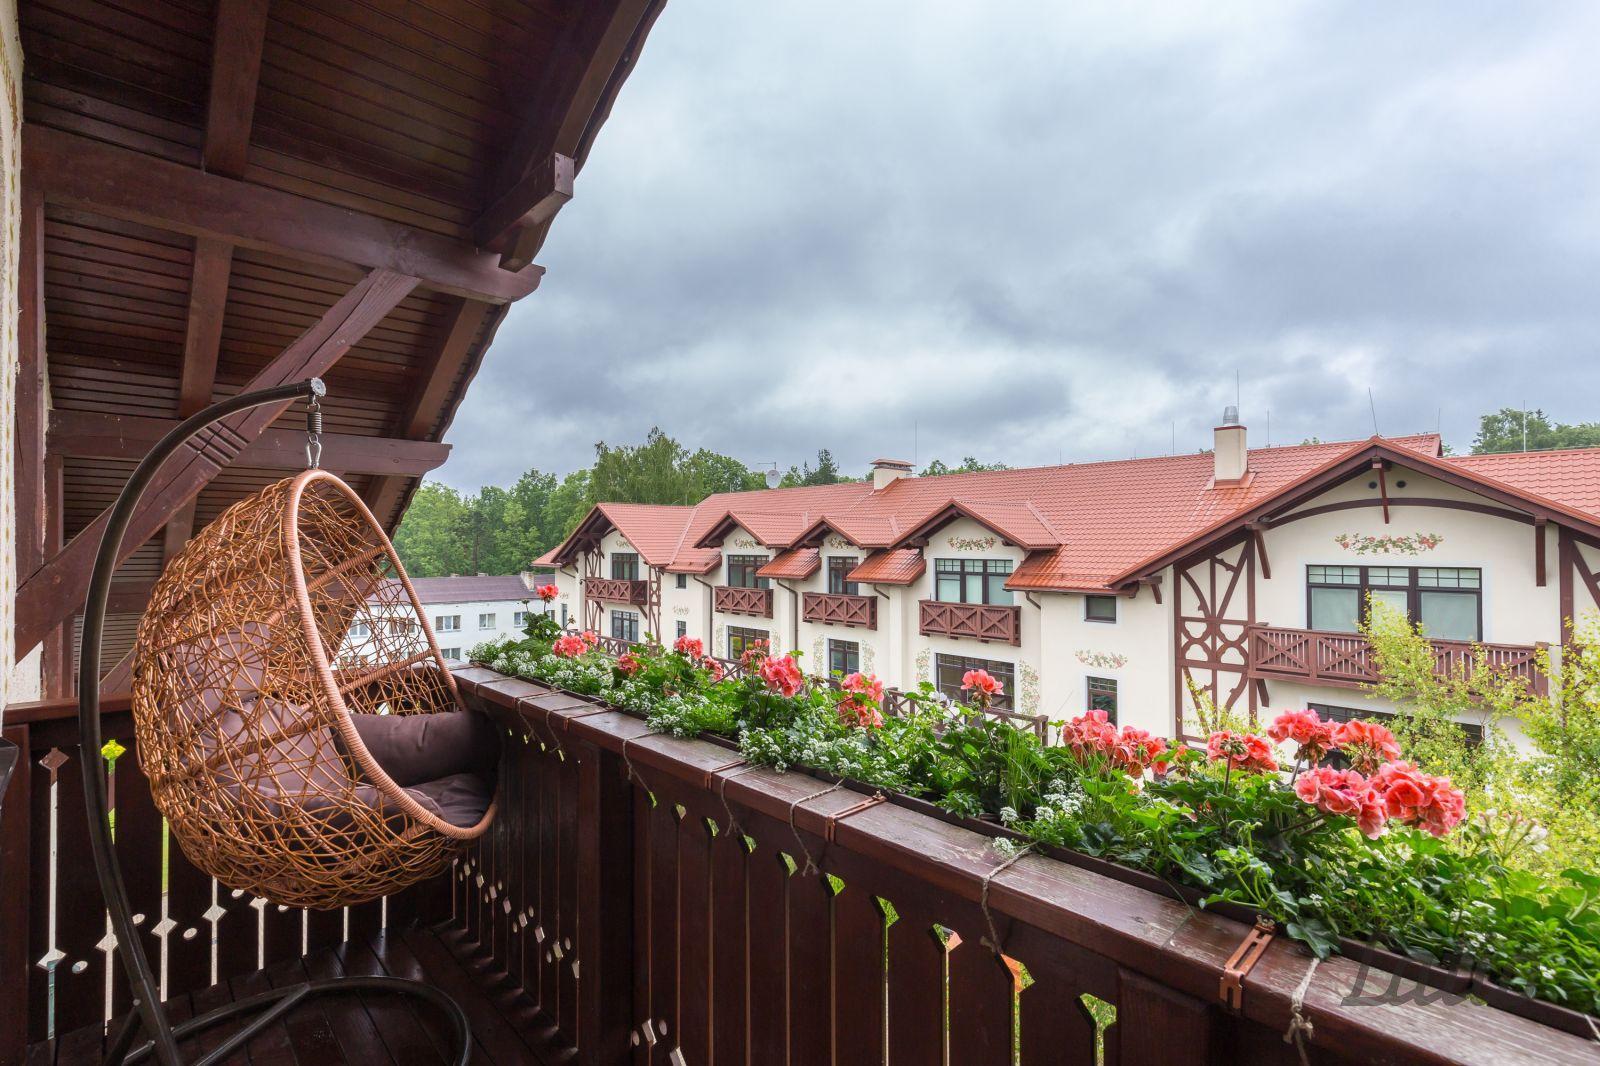 Šarmants mansarda dzīvoklis Alpu stilistikā Siguldas Mazajā Šveicē - Nekustamo īpašumu ziņas - City24.lv nekustamo īpašumu sludinājumu portāls